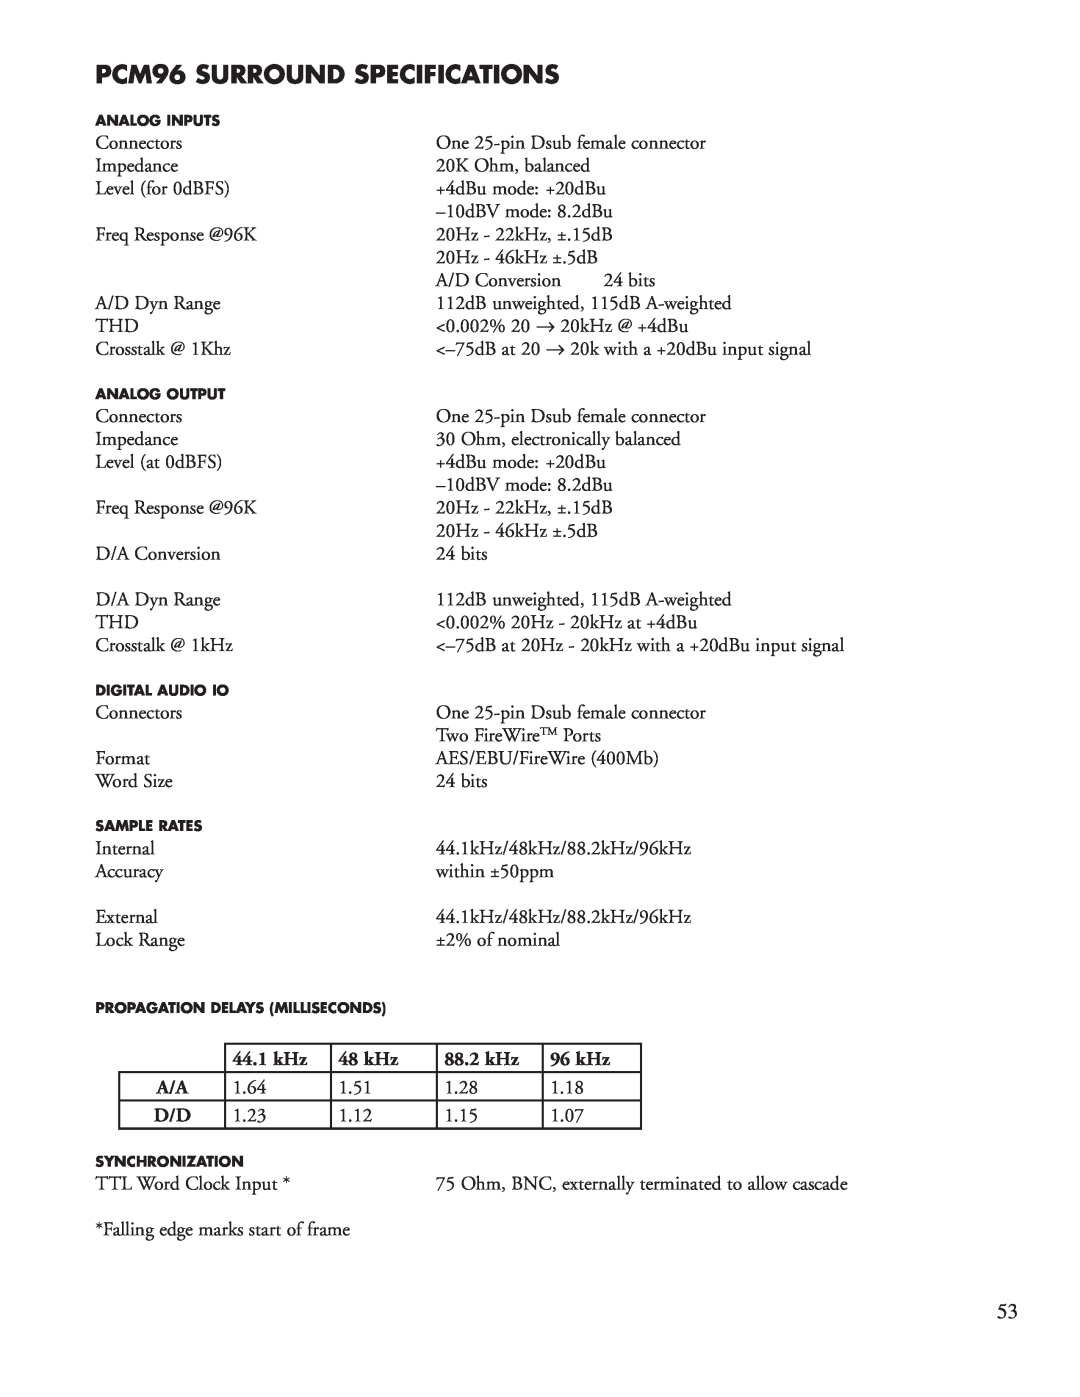 Lexicon manual PCM96 SURROUND Specifications, 44.1 kHz, 48 kHz, 88.2 kHz, 96 kHz 